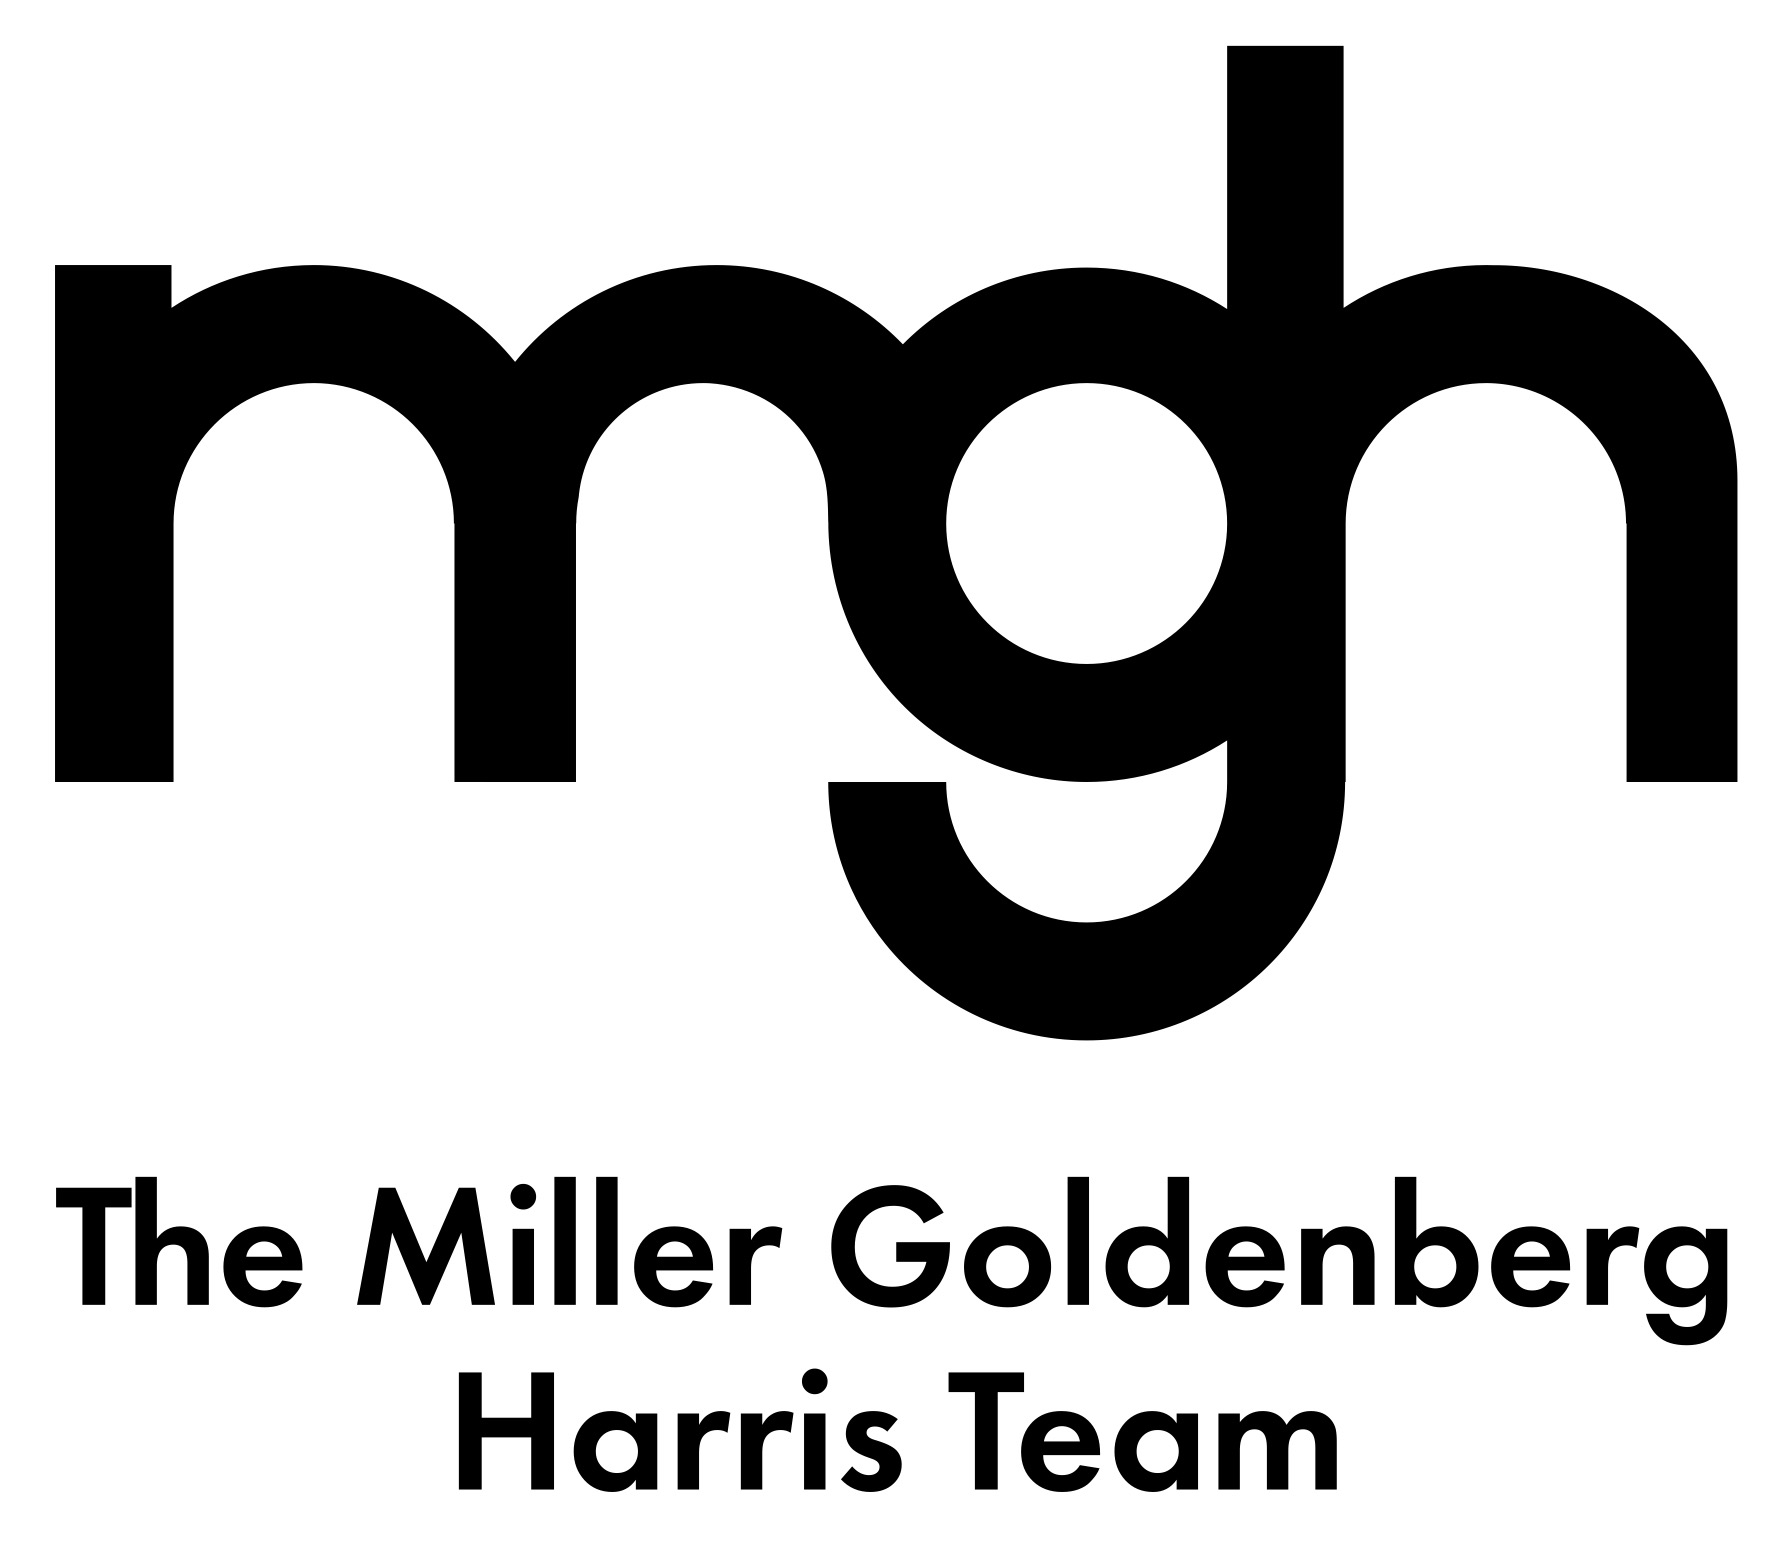 A text banner advertising The Miller Goldenberg.